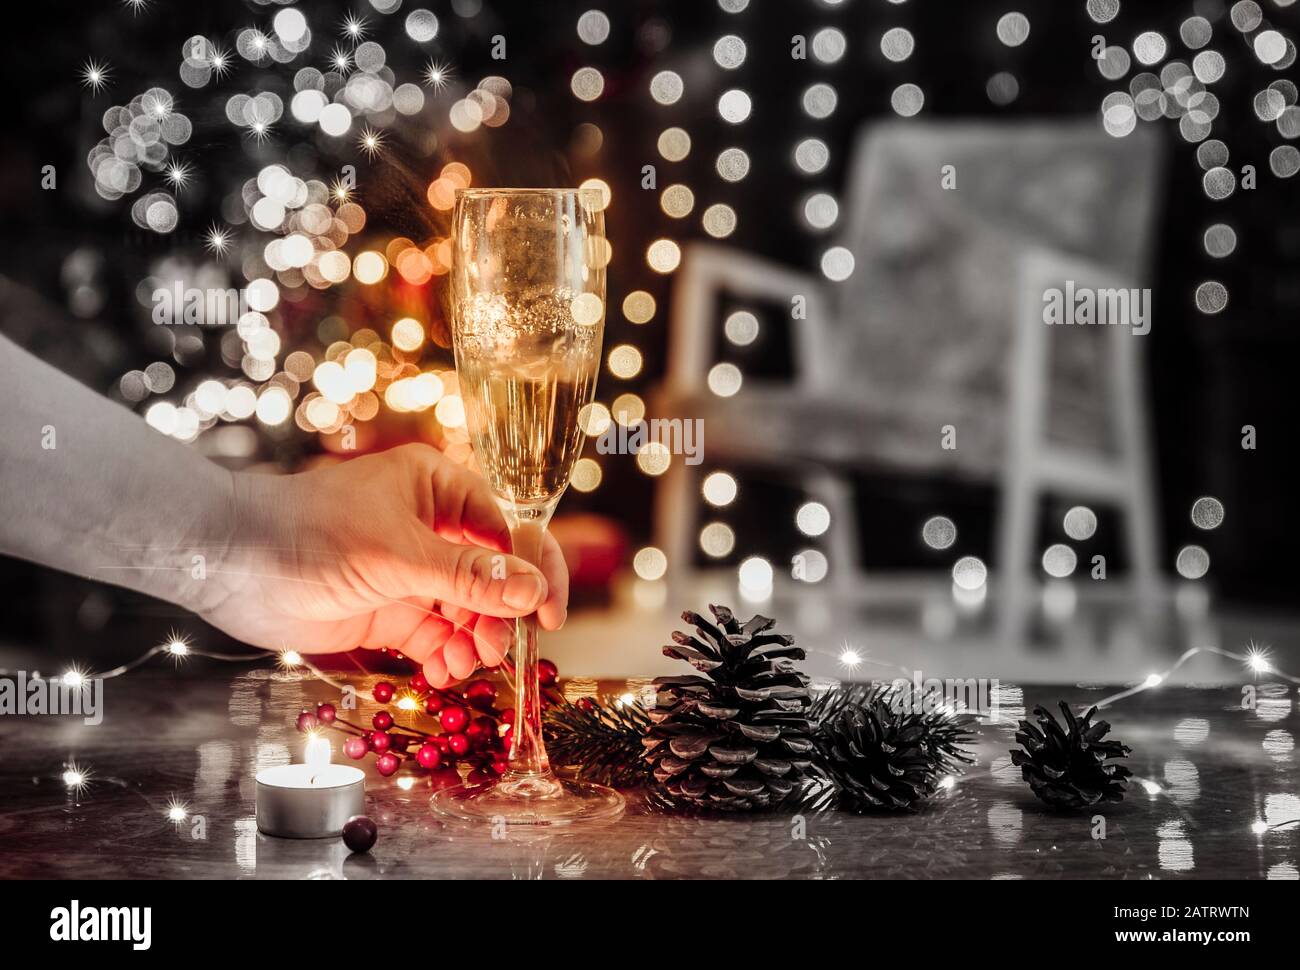 Weihnachtsfeiertage allein verbringen und Champagner allein trinken, Weihnachtsdepression und Alkoholismuskonzept. Selektive Fokussierung auf die Hand mit Alkoholflöte Stockfoto